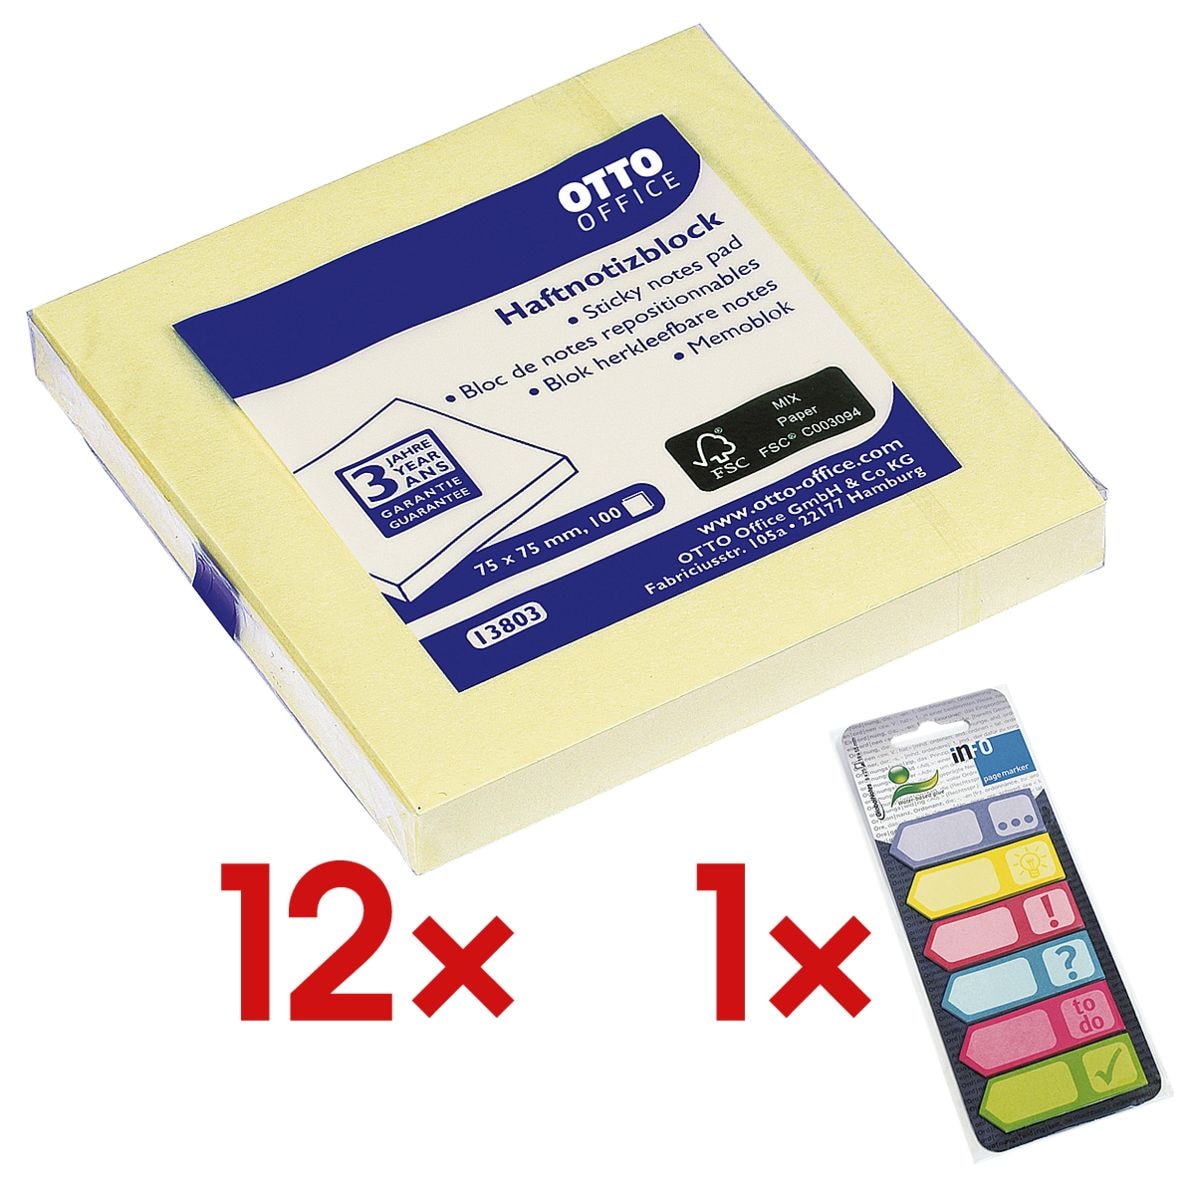 12x OTTO Office Haftnotizblock 7,5 x 7,5 cm, 1200 Blatt gesamt, gelb inkl. Haftmarker 150 Blatt gesamt, Papier, 50 x 18 mm